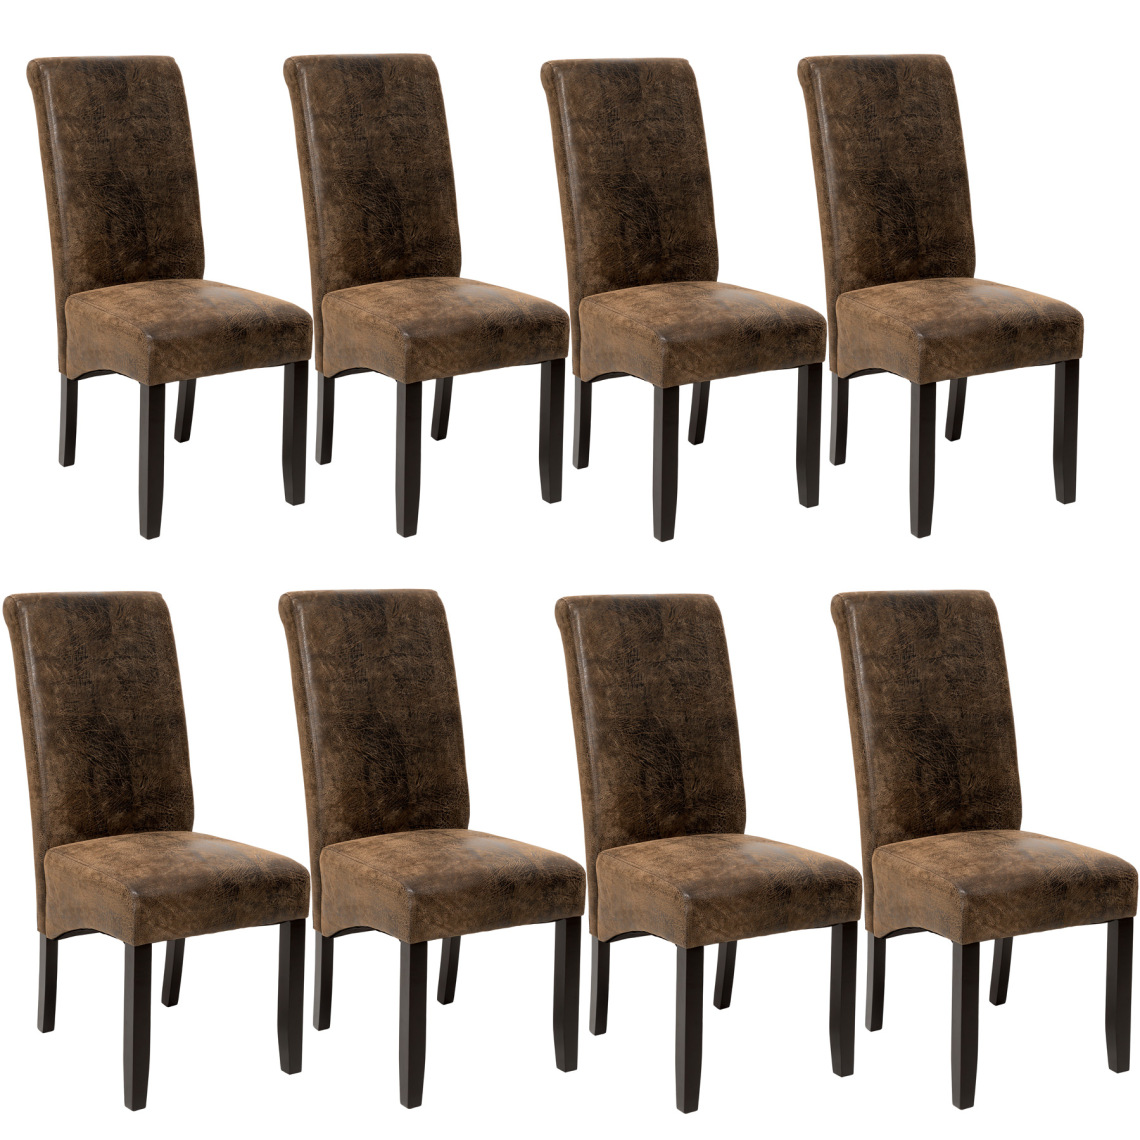 Tectake - Lot de 8 chaises aspect cuir - marron foncé - Chaises